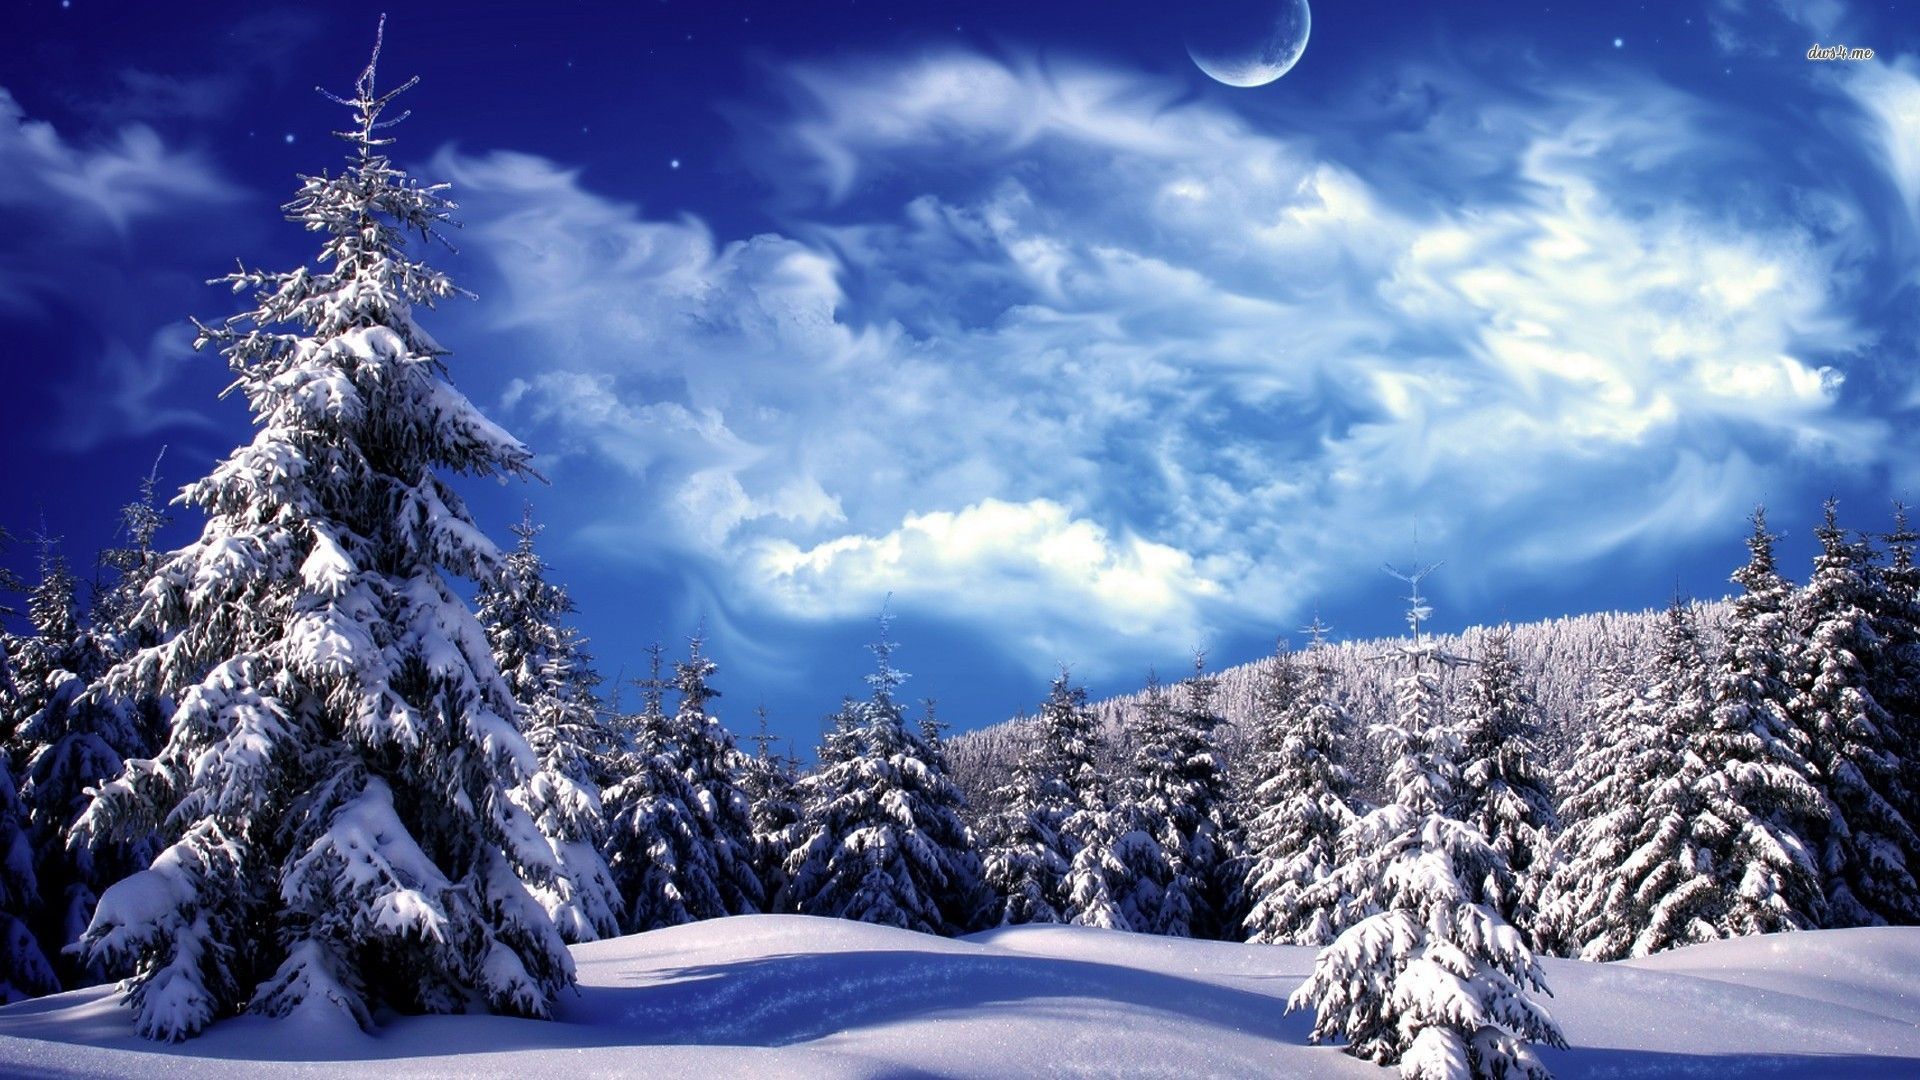 ∾ Winter Facebook Covers ∾. Winter facebook covers, Winter wonderland wallpaper, Winter wonderland picture